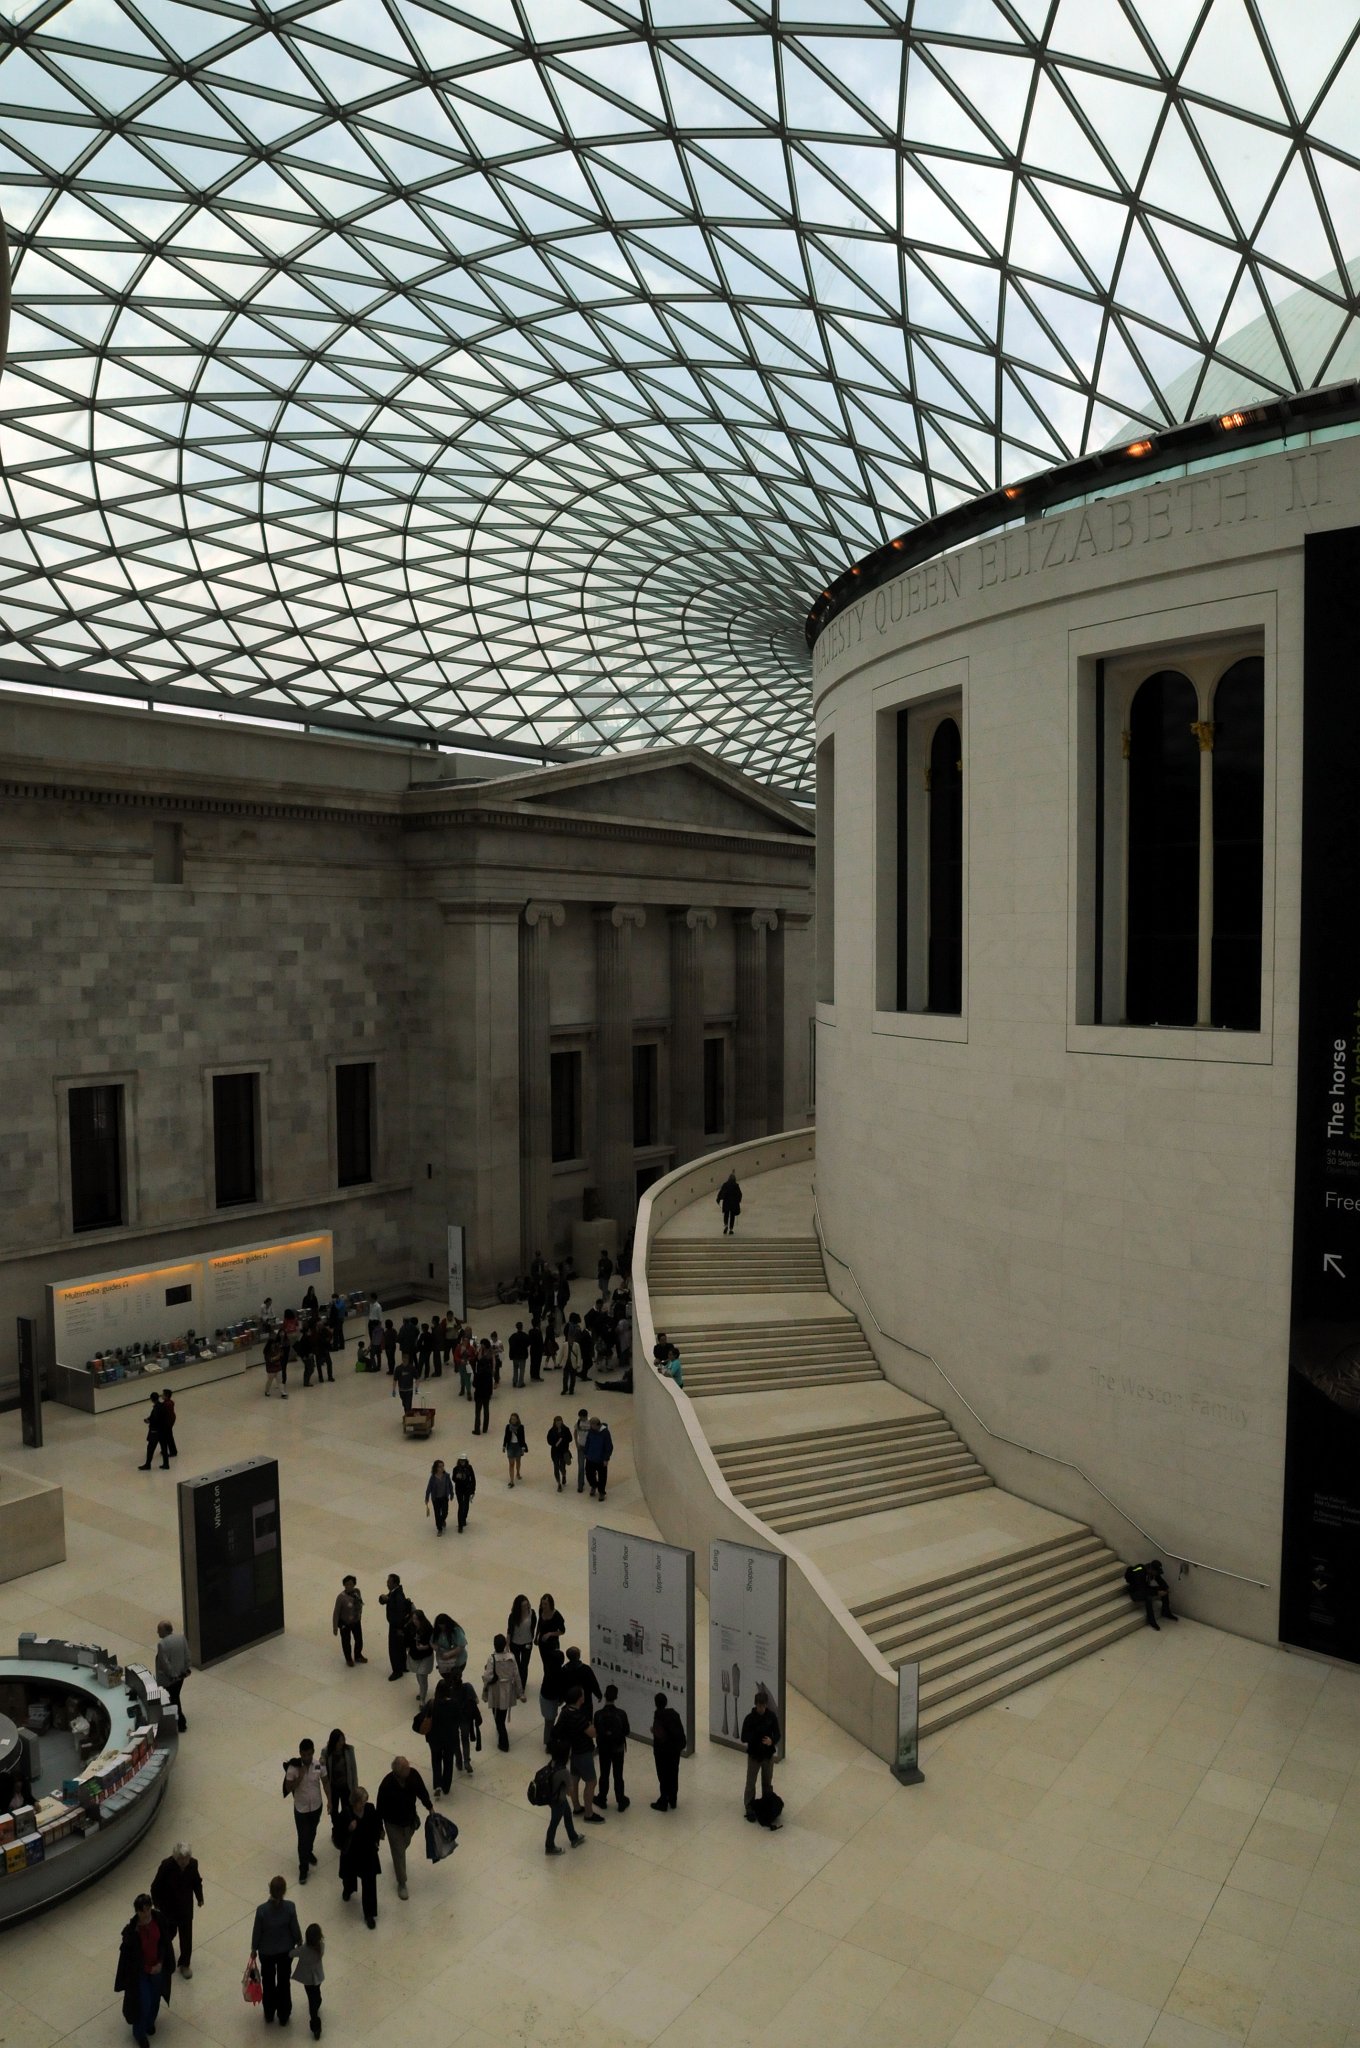 DSC_5780_1.jpg - Velká dvorana Alžběty II. je zastřešená plocha v centru budovy muzea, navržená společností Foster and Partners. Byla otevřena v prosinci 2000 a je největším zastřešeným prostorem v Evropě. Střecha je tvořena kovovou konstrukcí vyplněnou 1 656 skleněných panelů. V centru velké dvorany se nachází čítárna uvolněná Britskou knihovnou, která její funkci zabezpečuje v St Pancras.